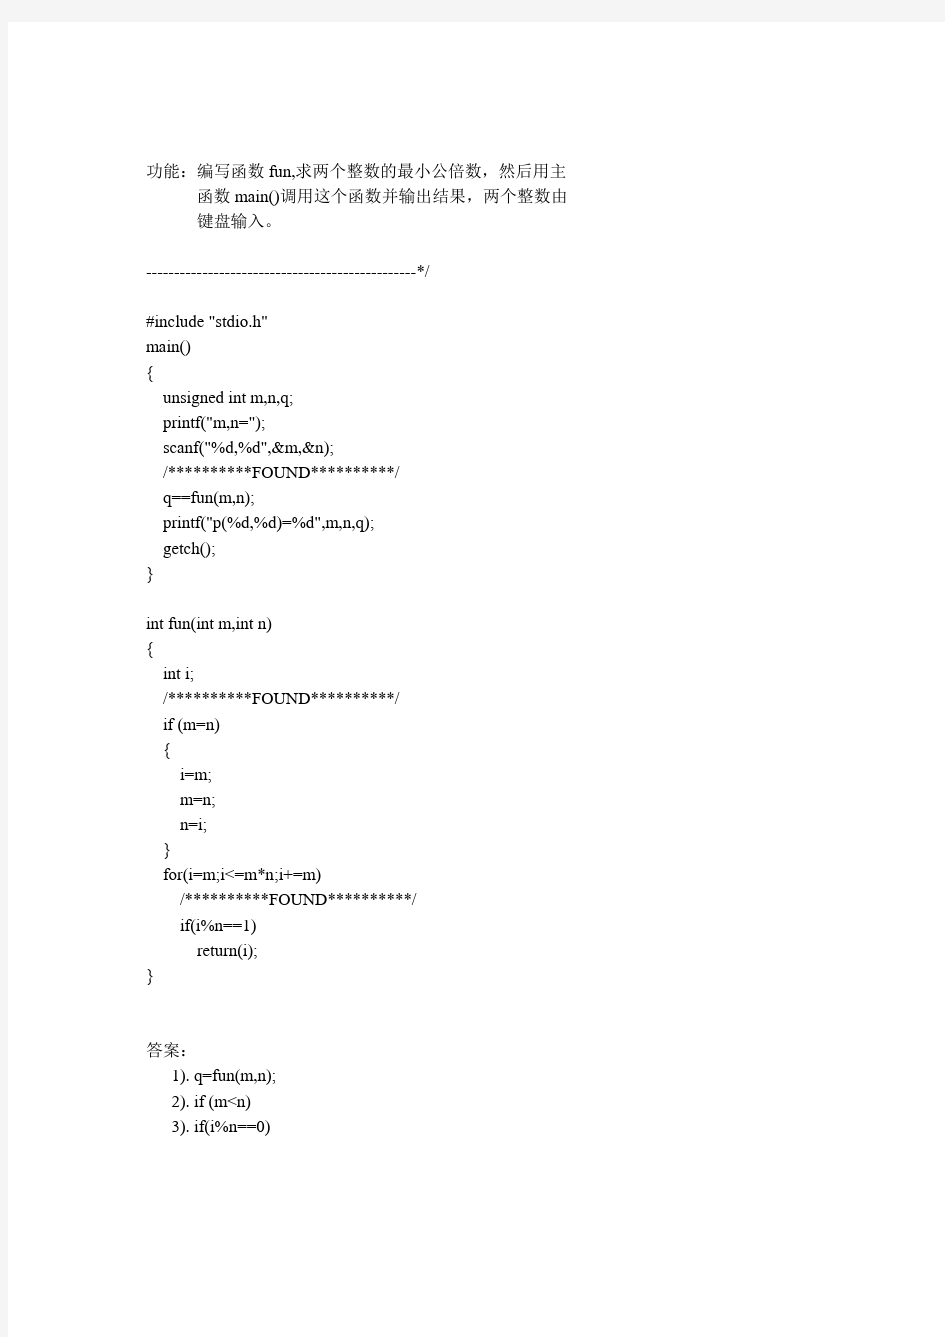 黑龙江大学C语言程序设计试题库程序改错